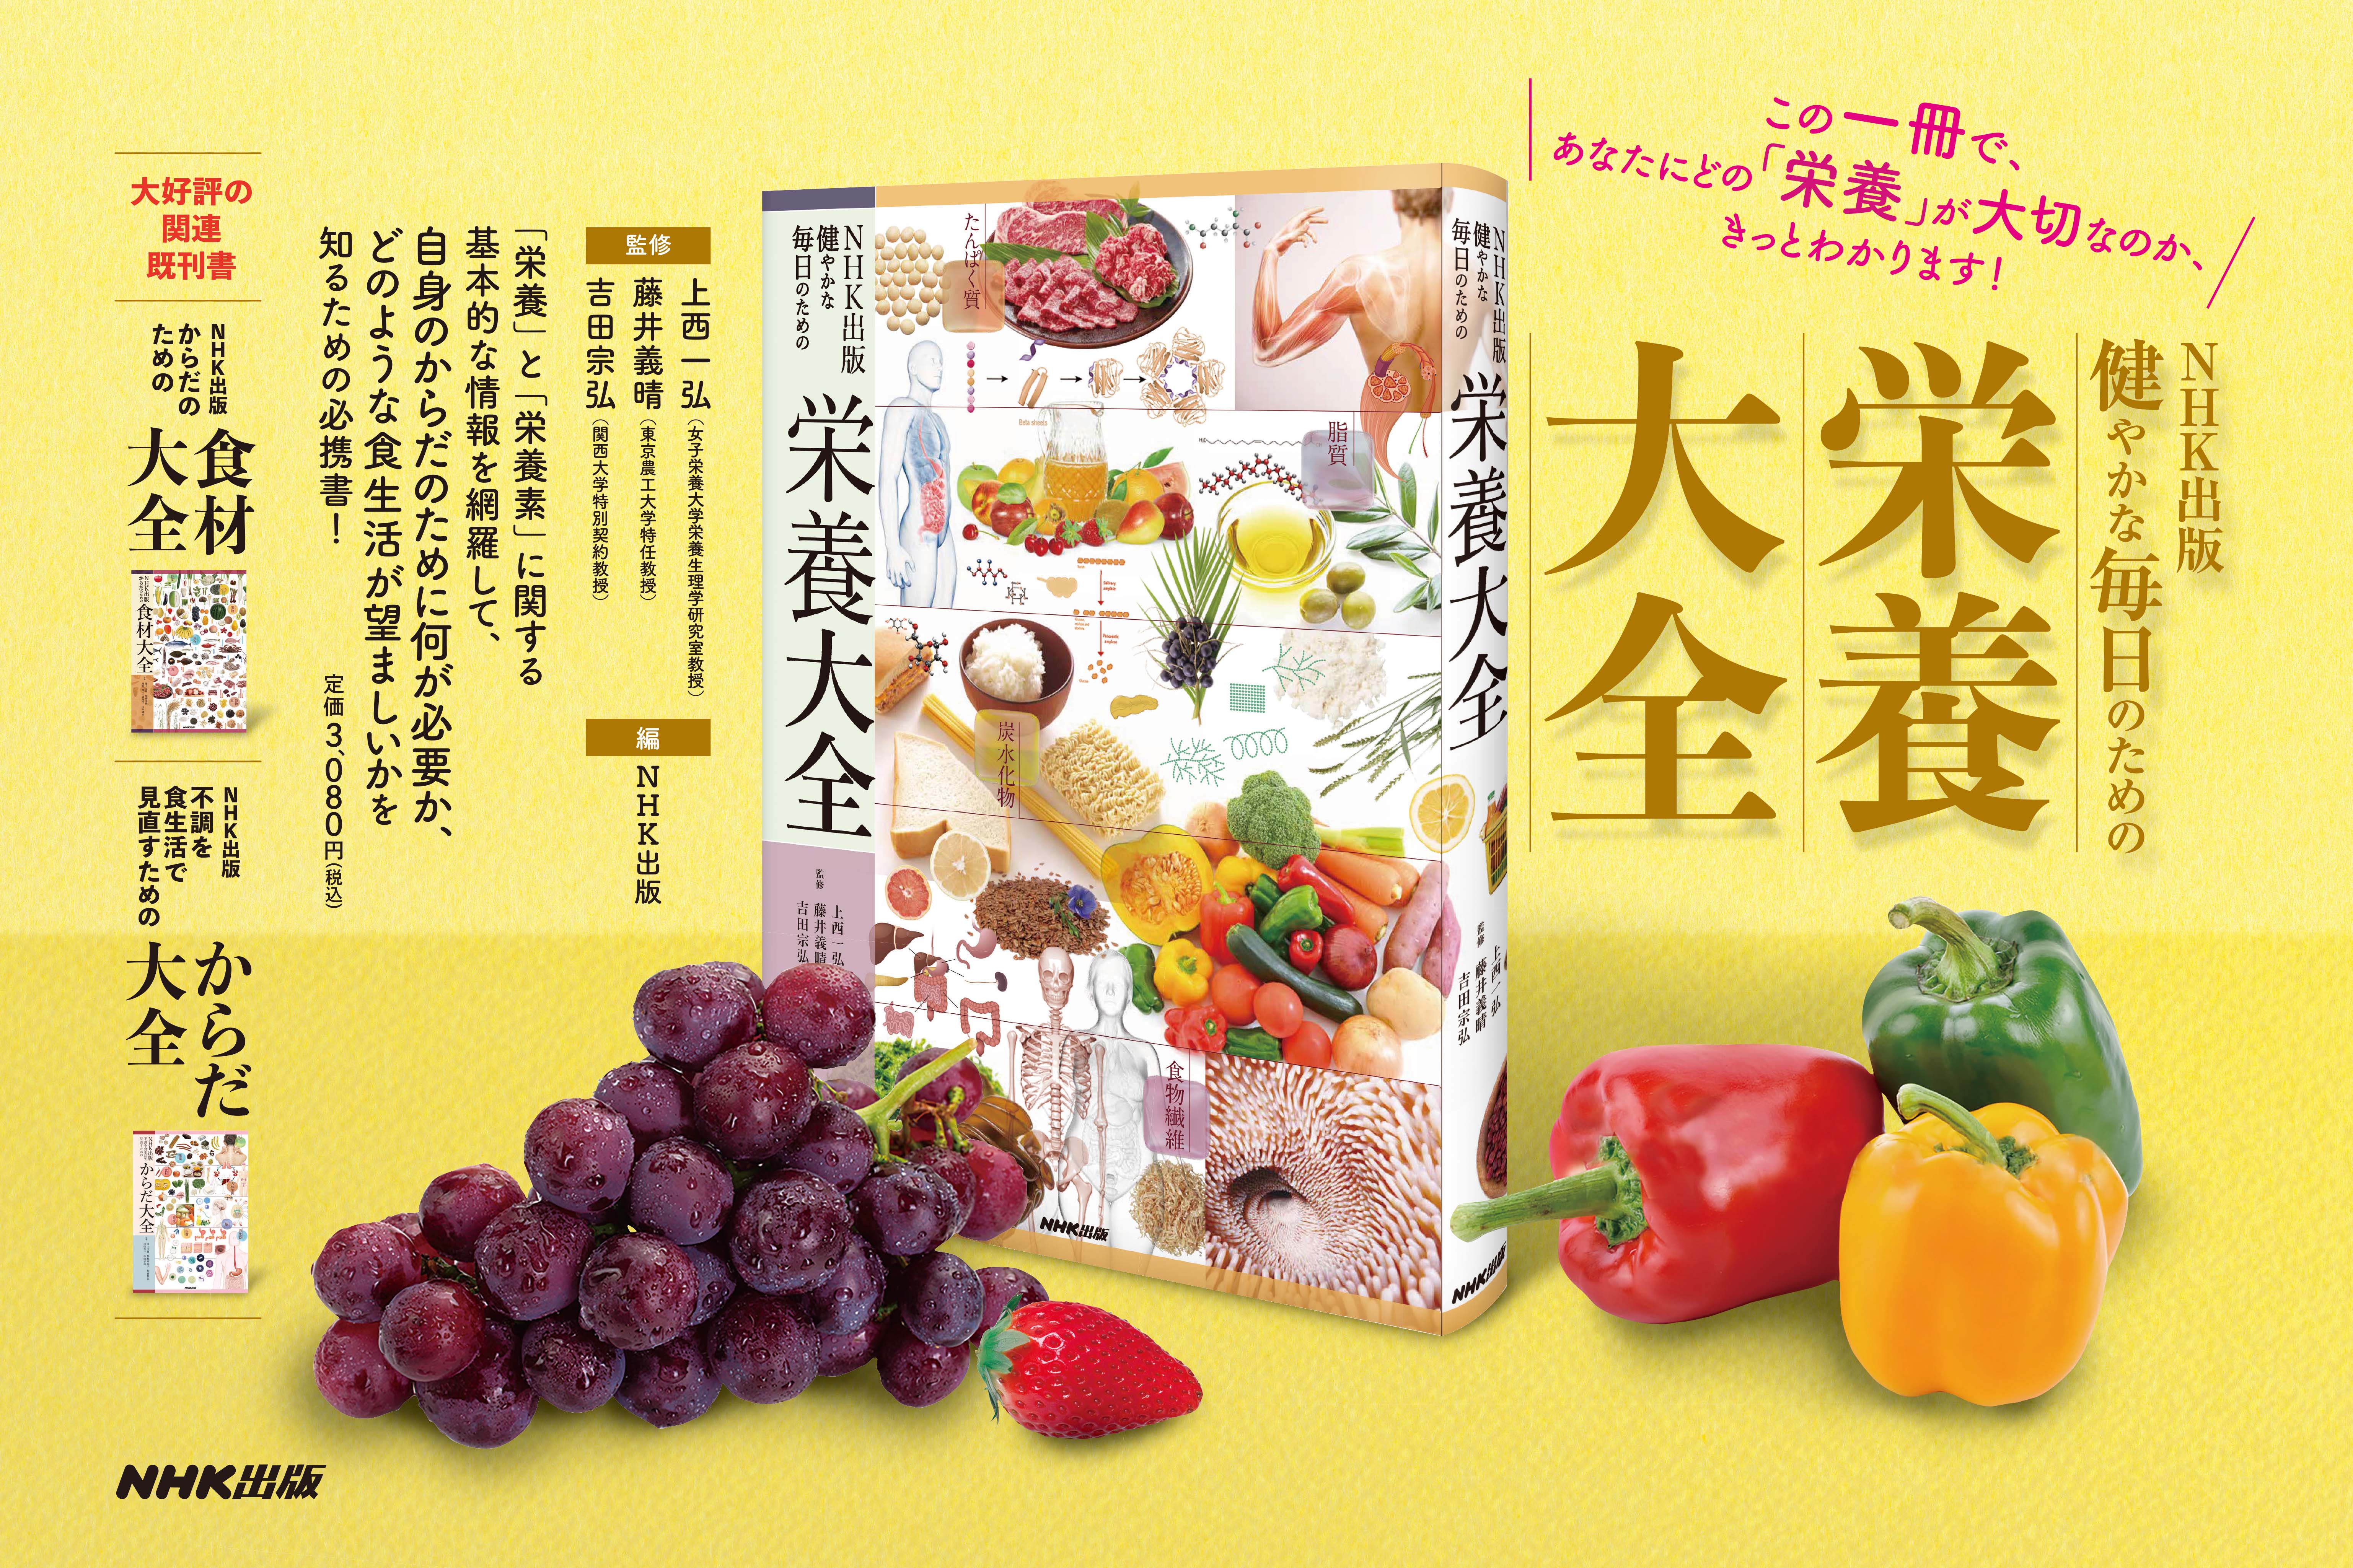 大好評のシリーズ第3弾！ 『NHK出版 健やかな毎日のための栄養大全』11